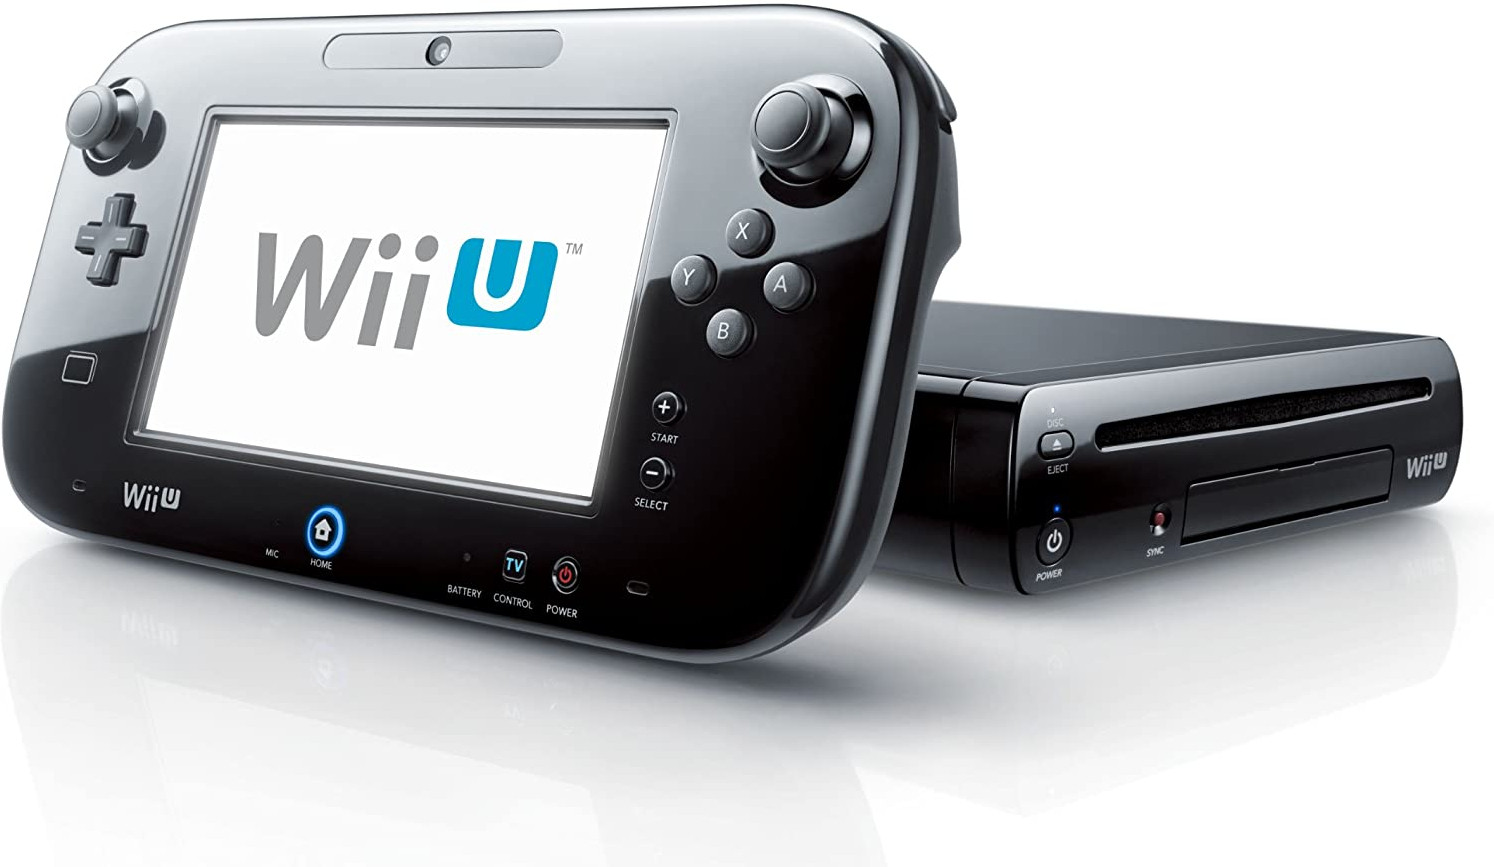 Definitie Bedankt Buiten adem Nedgame gameshop: Nintendo Wii U Premium Pack (Black) (Nintendo Wii U) kopen